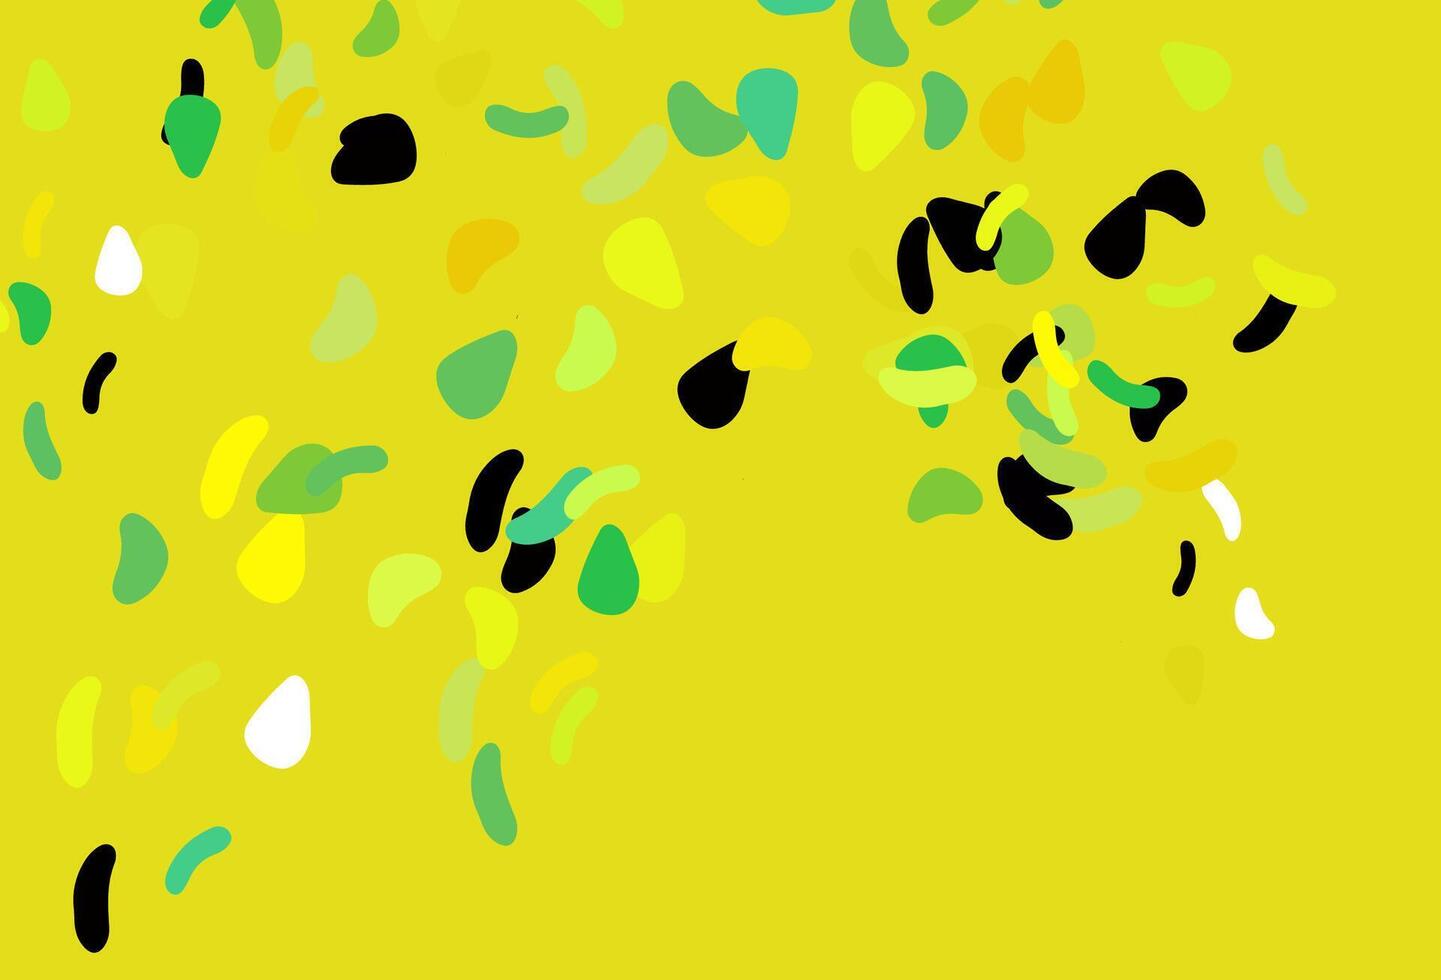 pano de fundo de vetor verde e amarelo claro com formas abstratas.